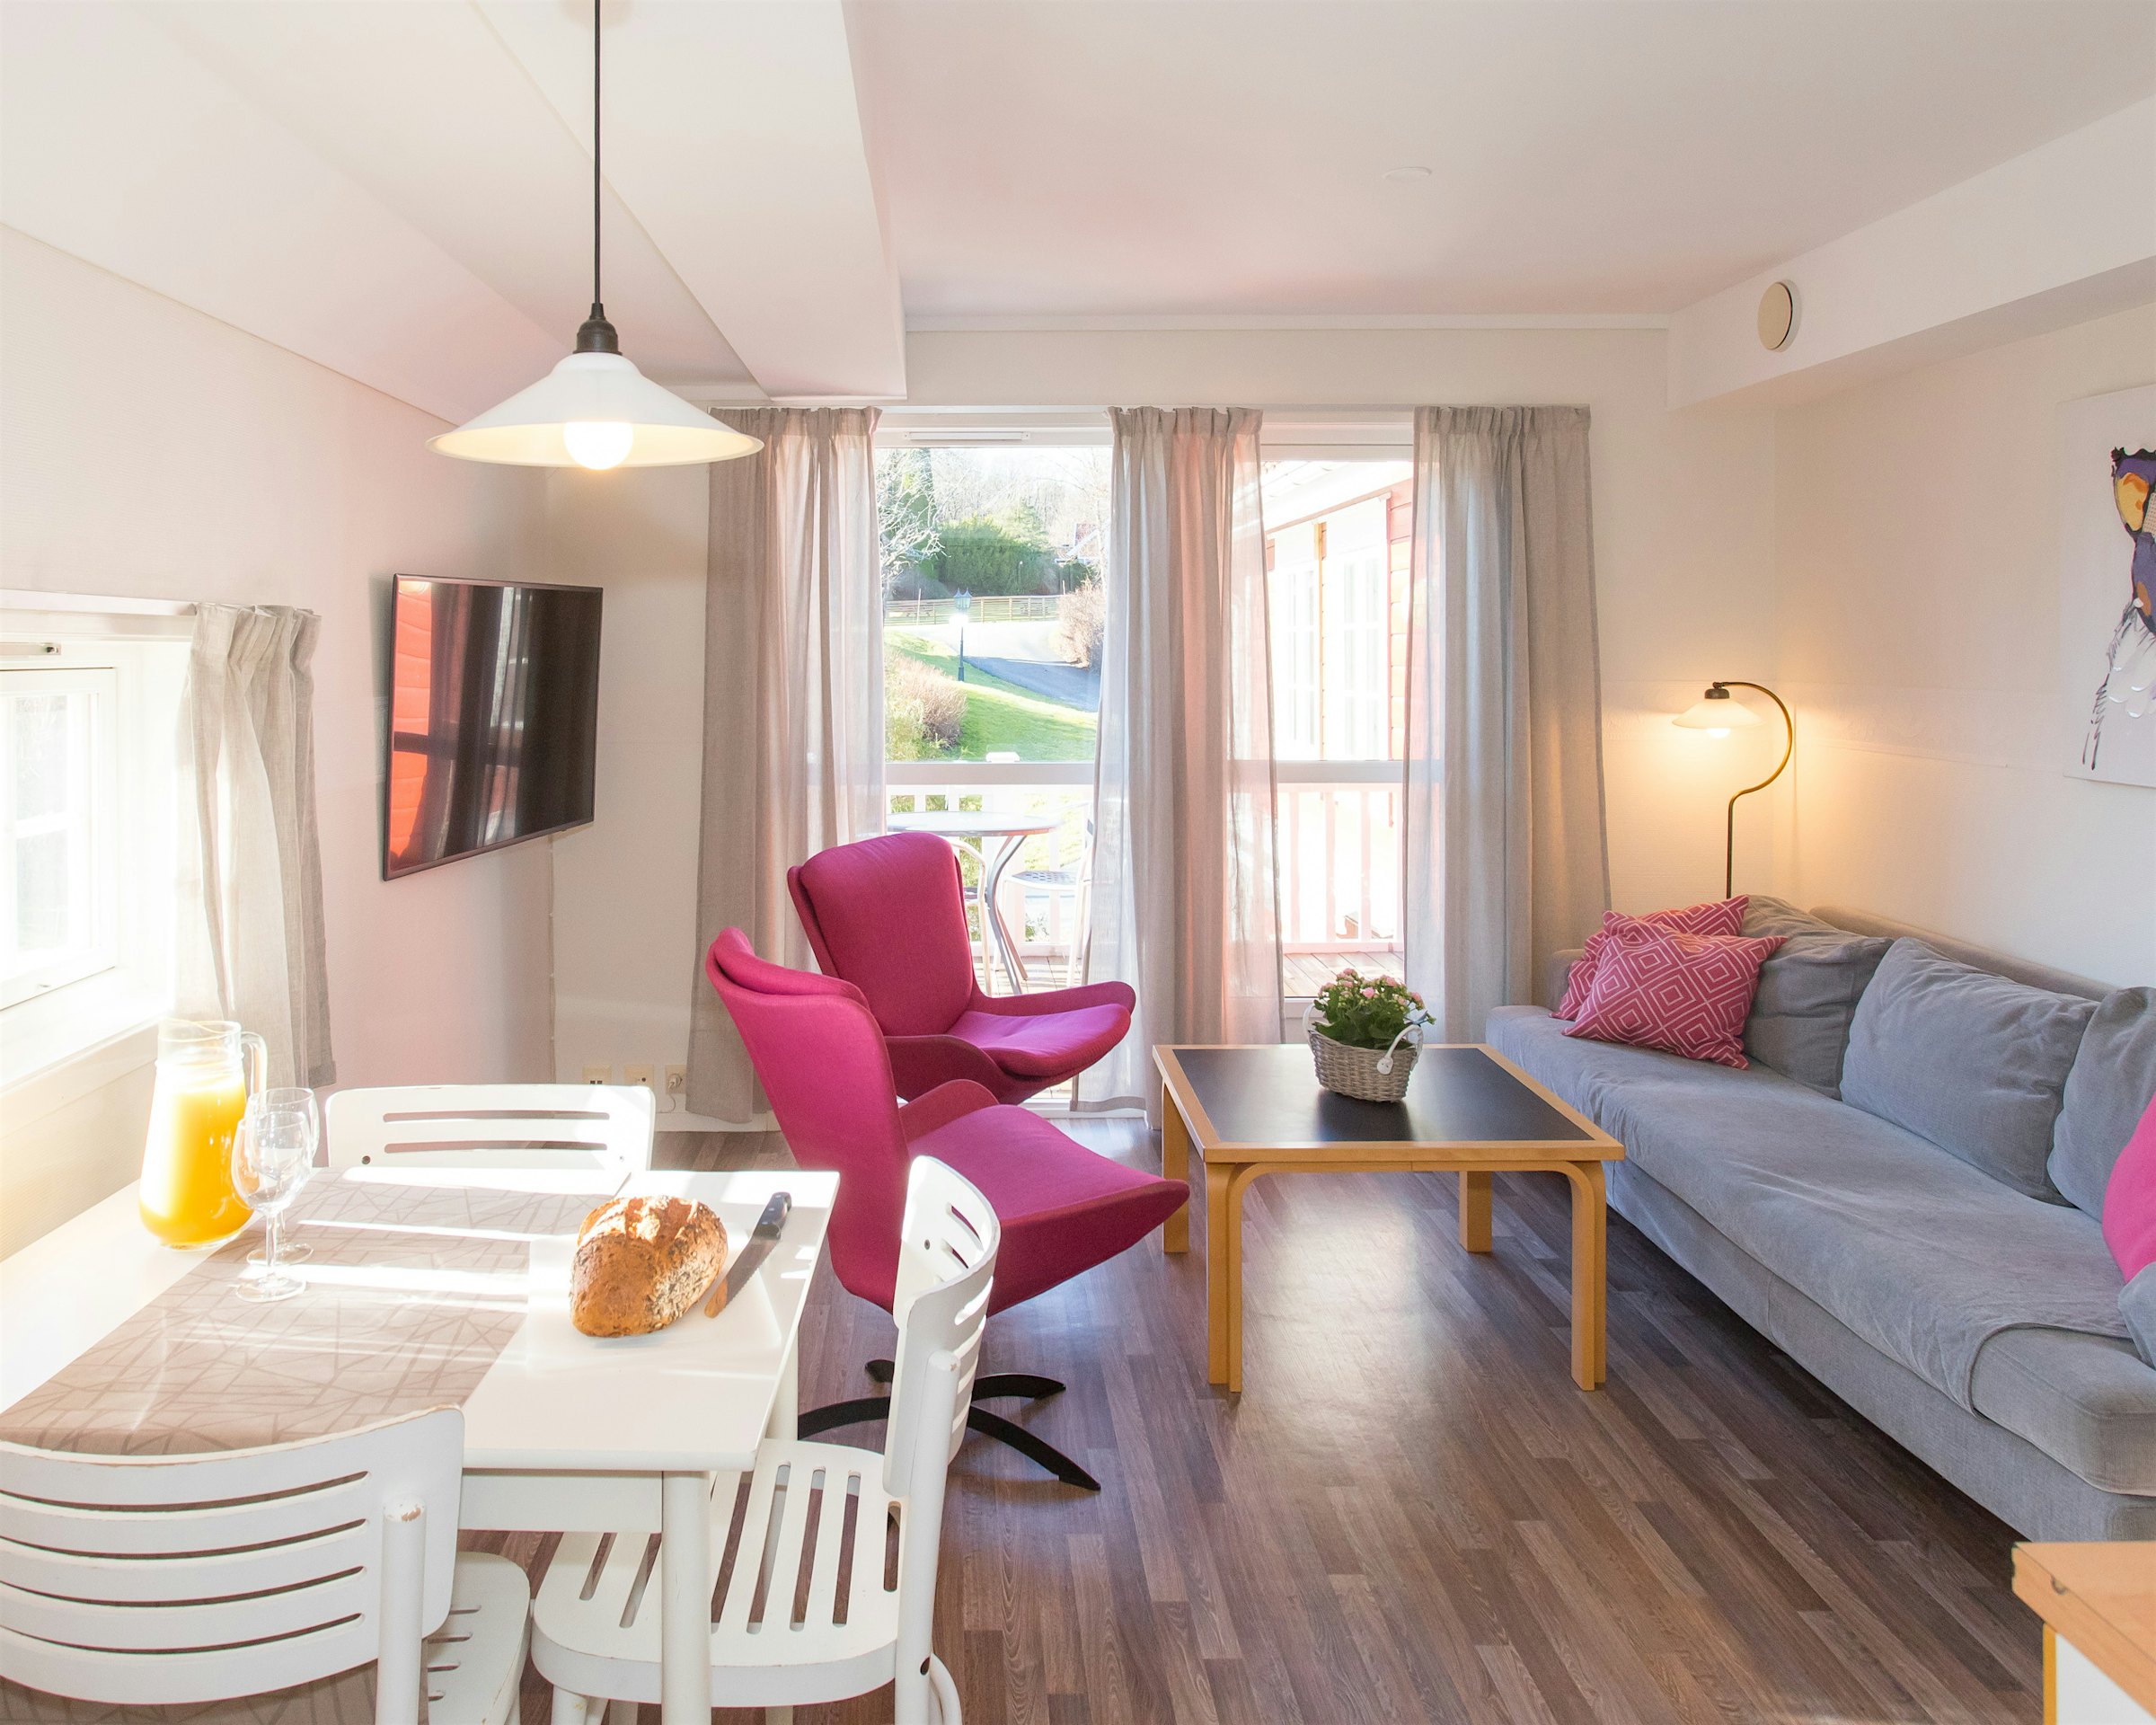 Heller und offener Raum mit viel natürlichem Licht durch große Fenster. Zwei rosafarbene Sessel, Sofa, Fernseher und gedeckter Esstisch zum Frühstück. Foto